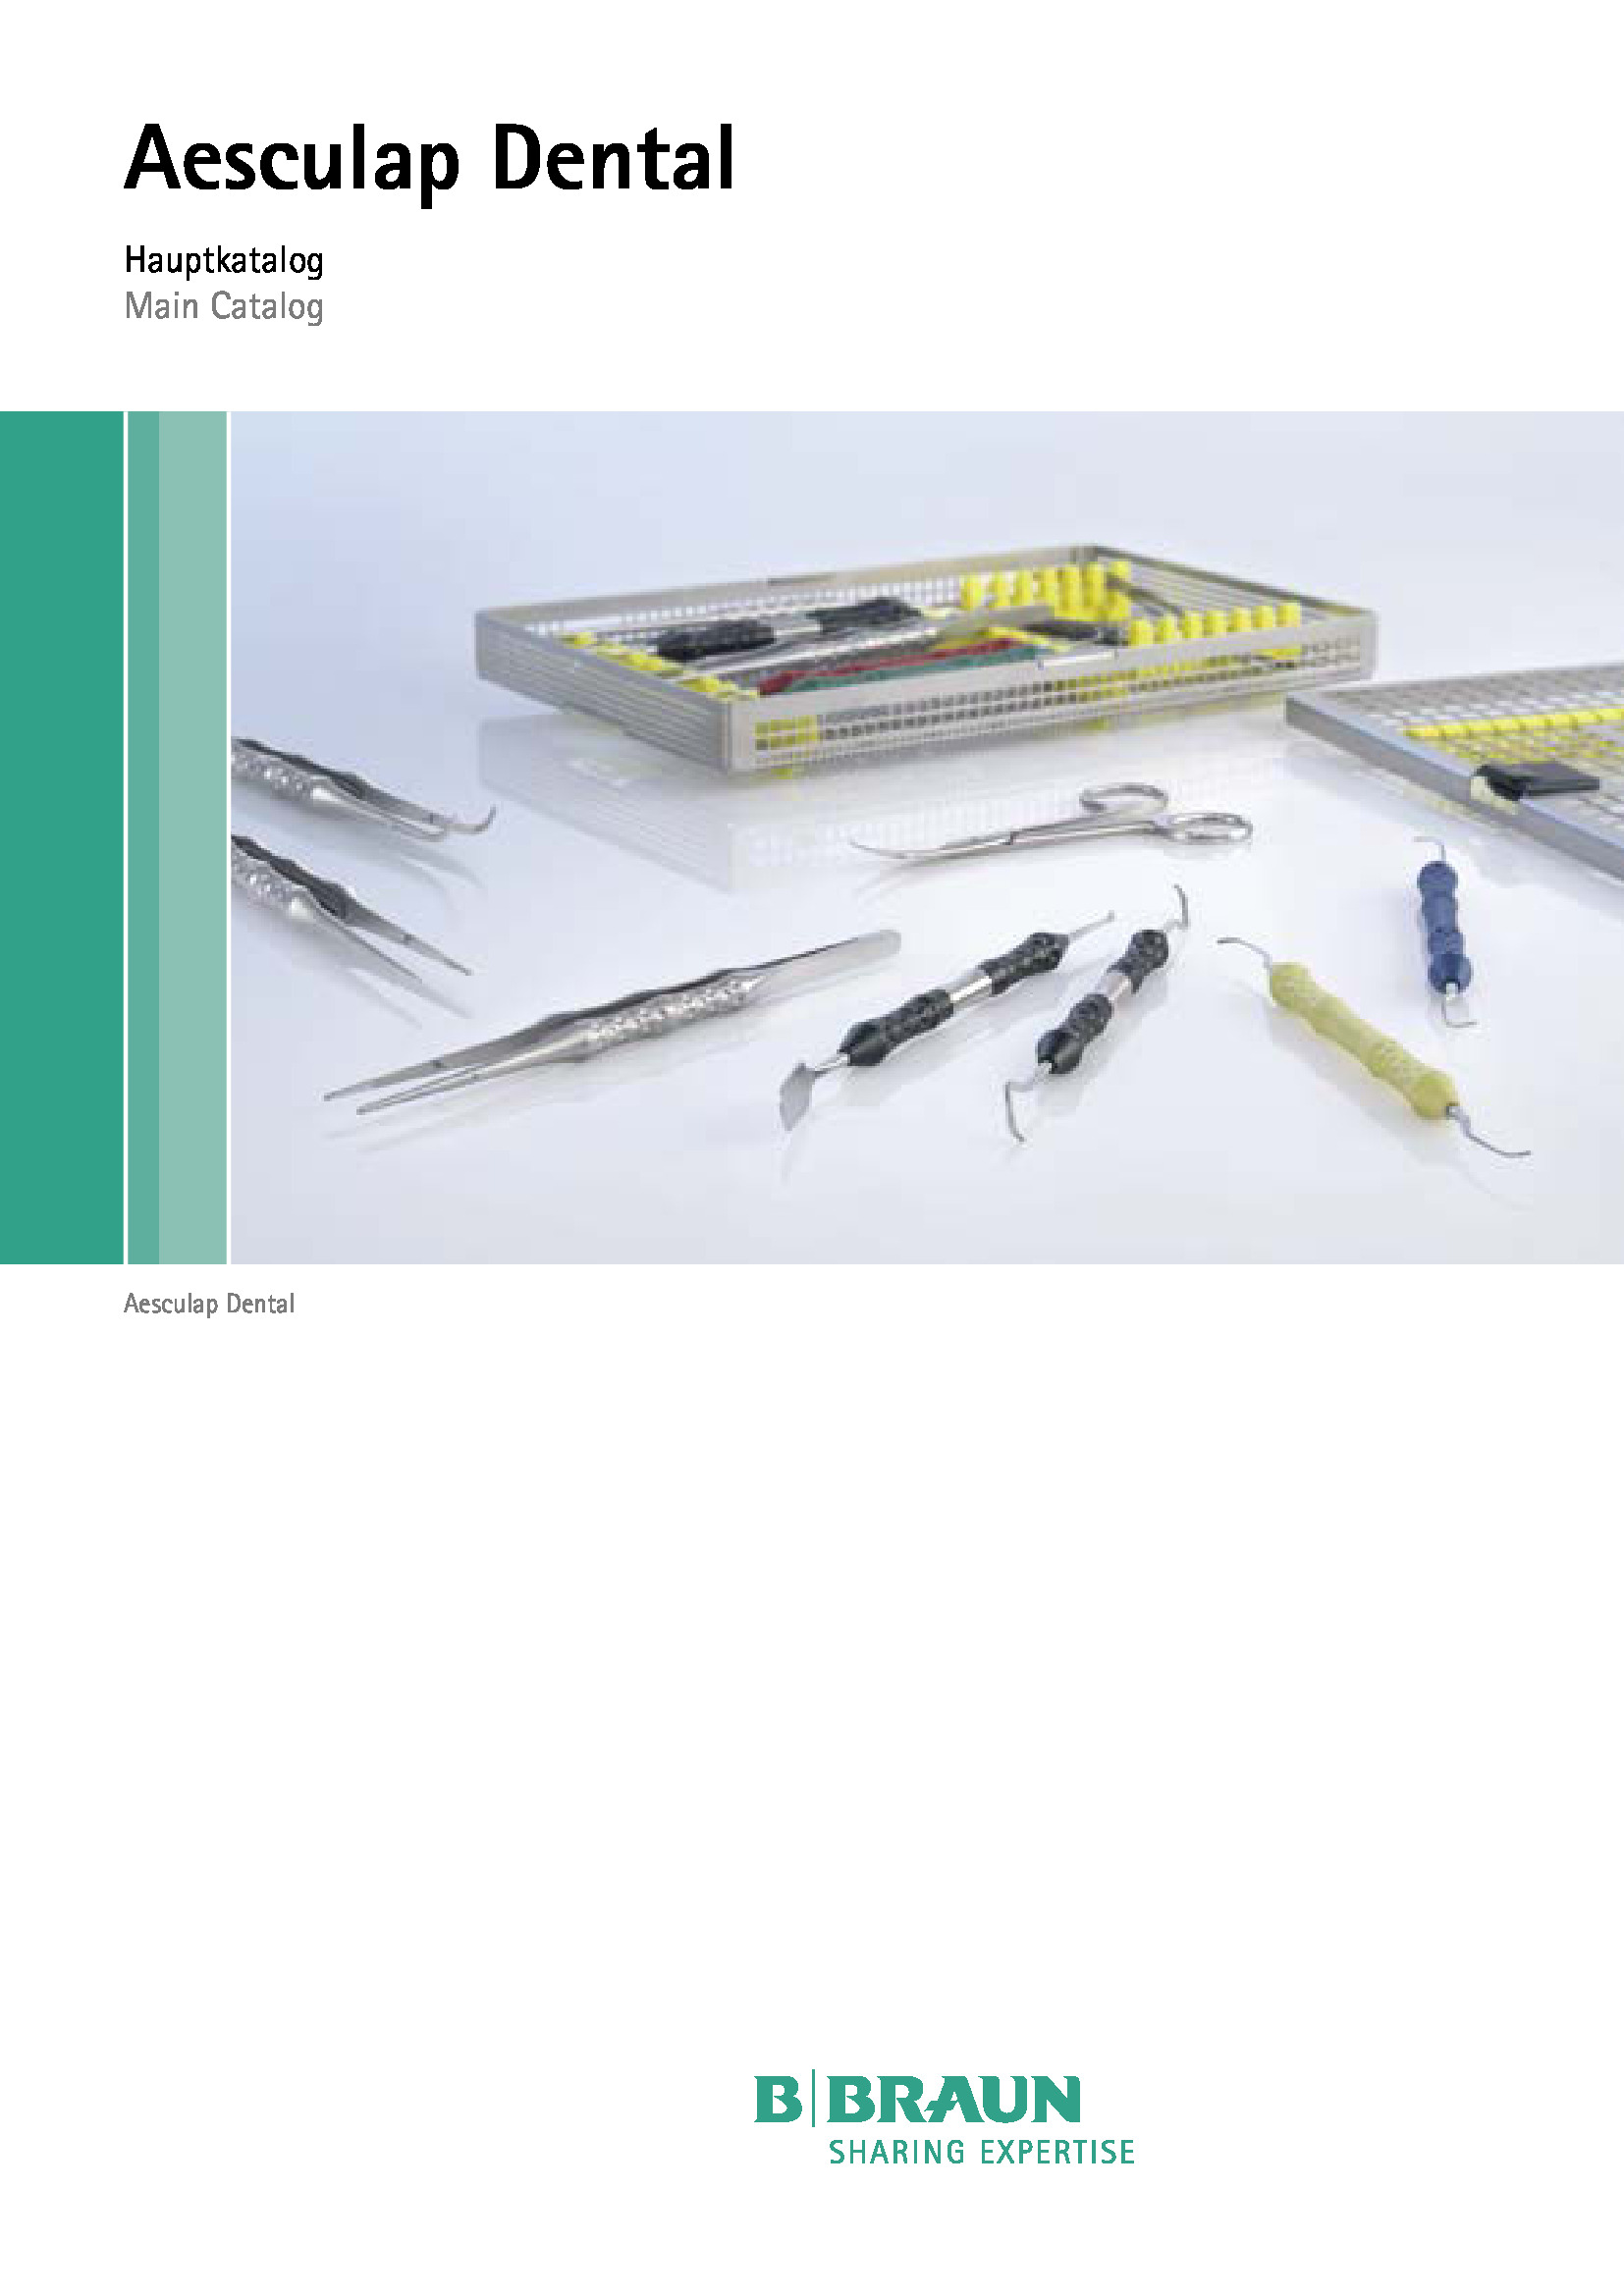 Обложка дополнительного файла для Инструменты для имплантологии, ERGOPLANT, набор для расщепления кости